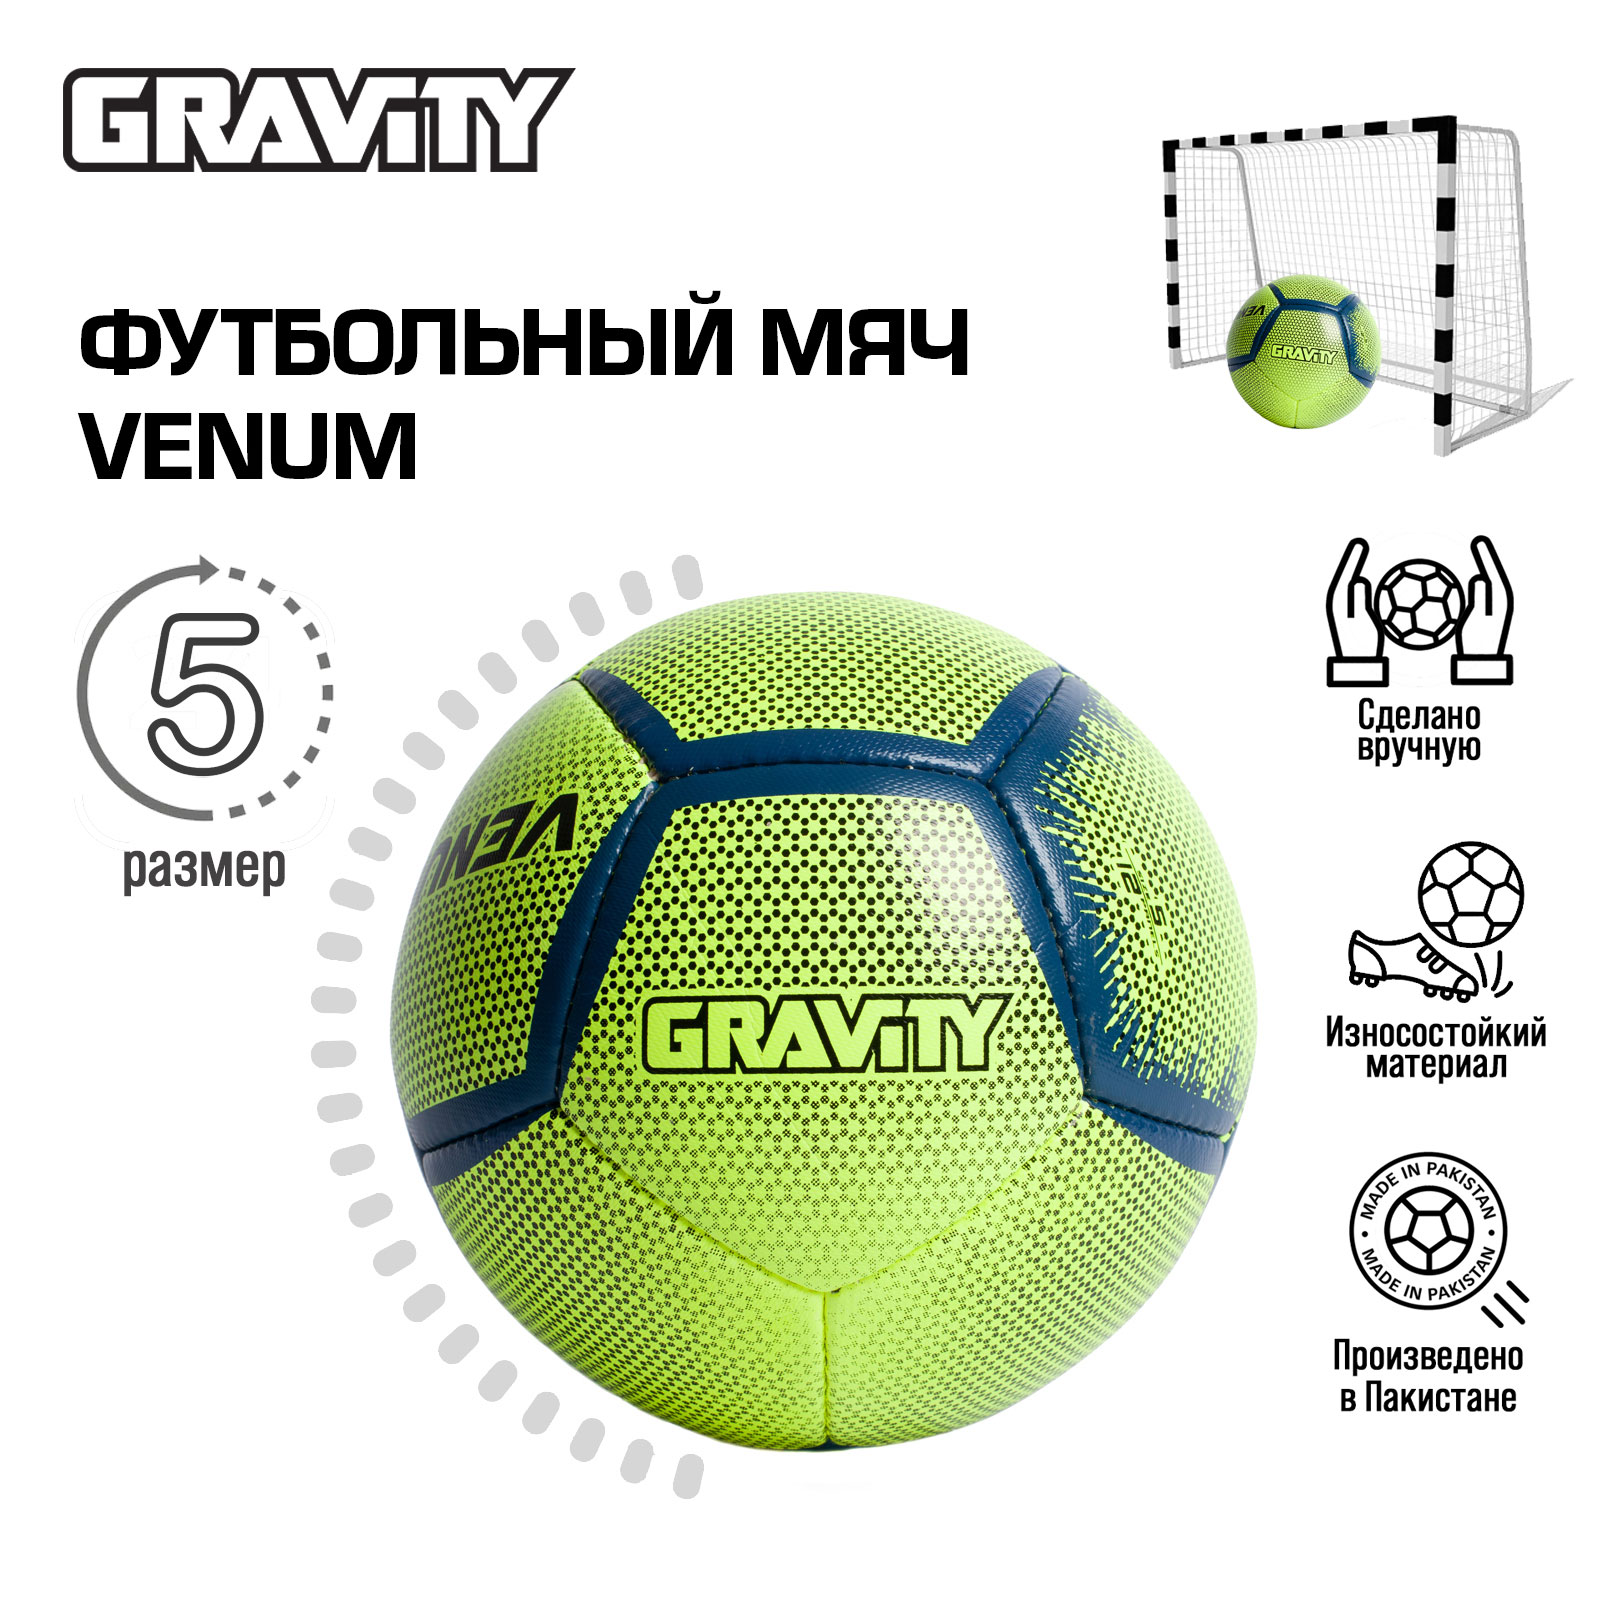 Футбольный мяч Gravity, ручная сшивка, VENUM, размер 5